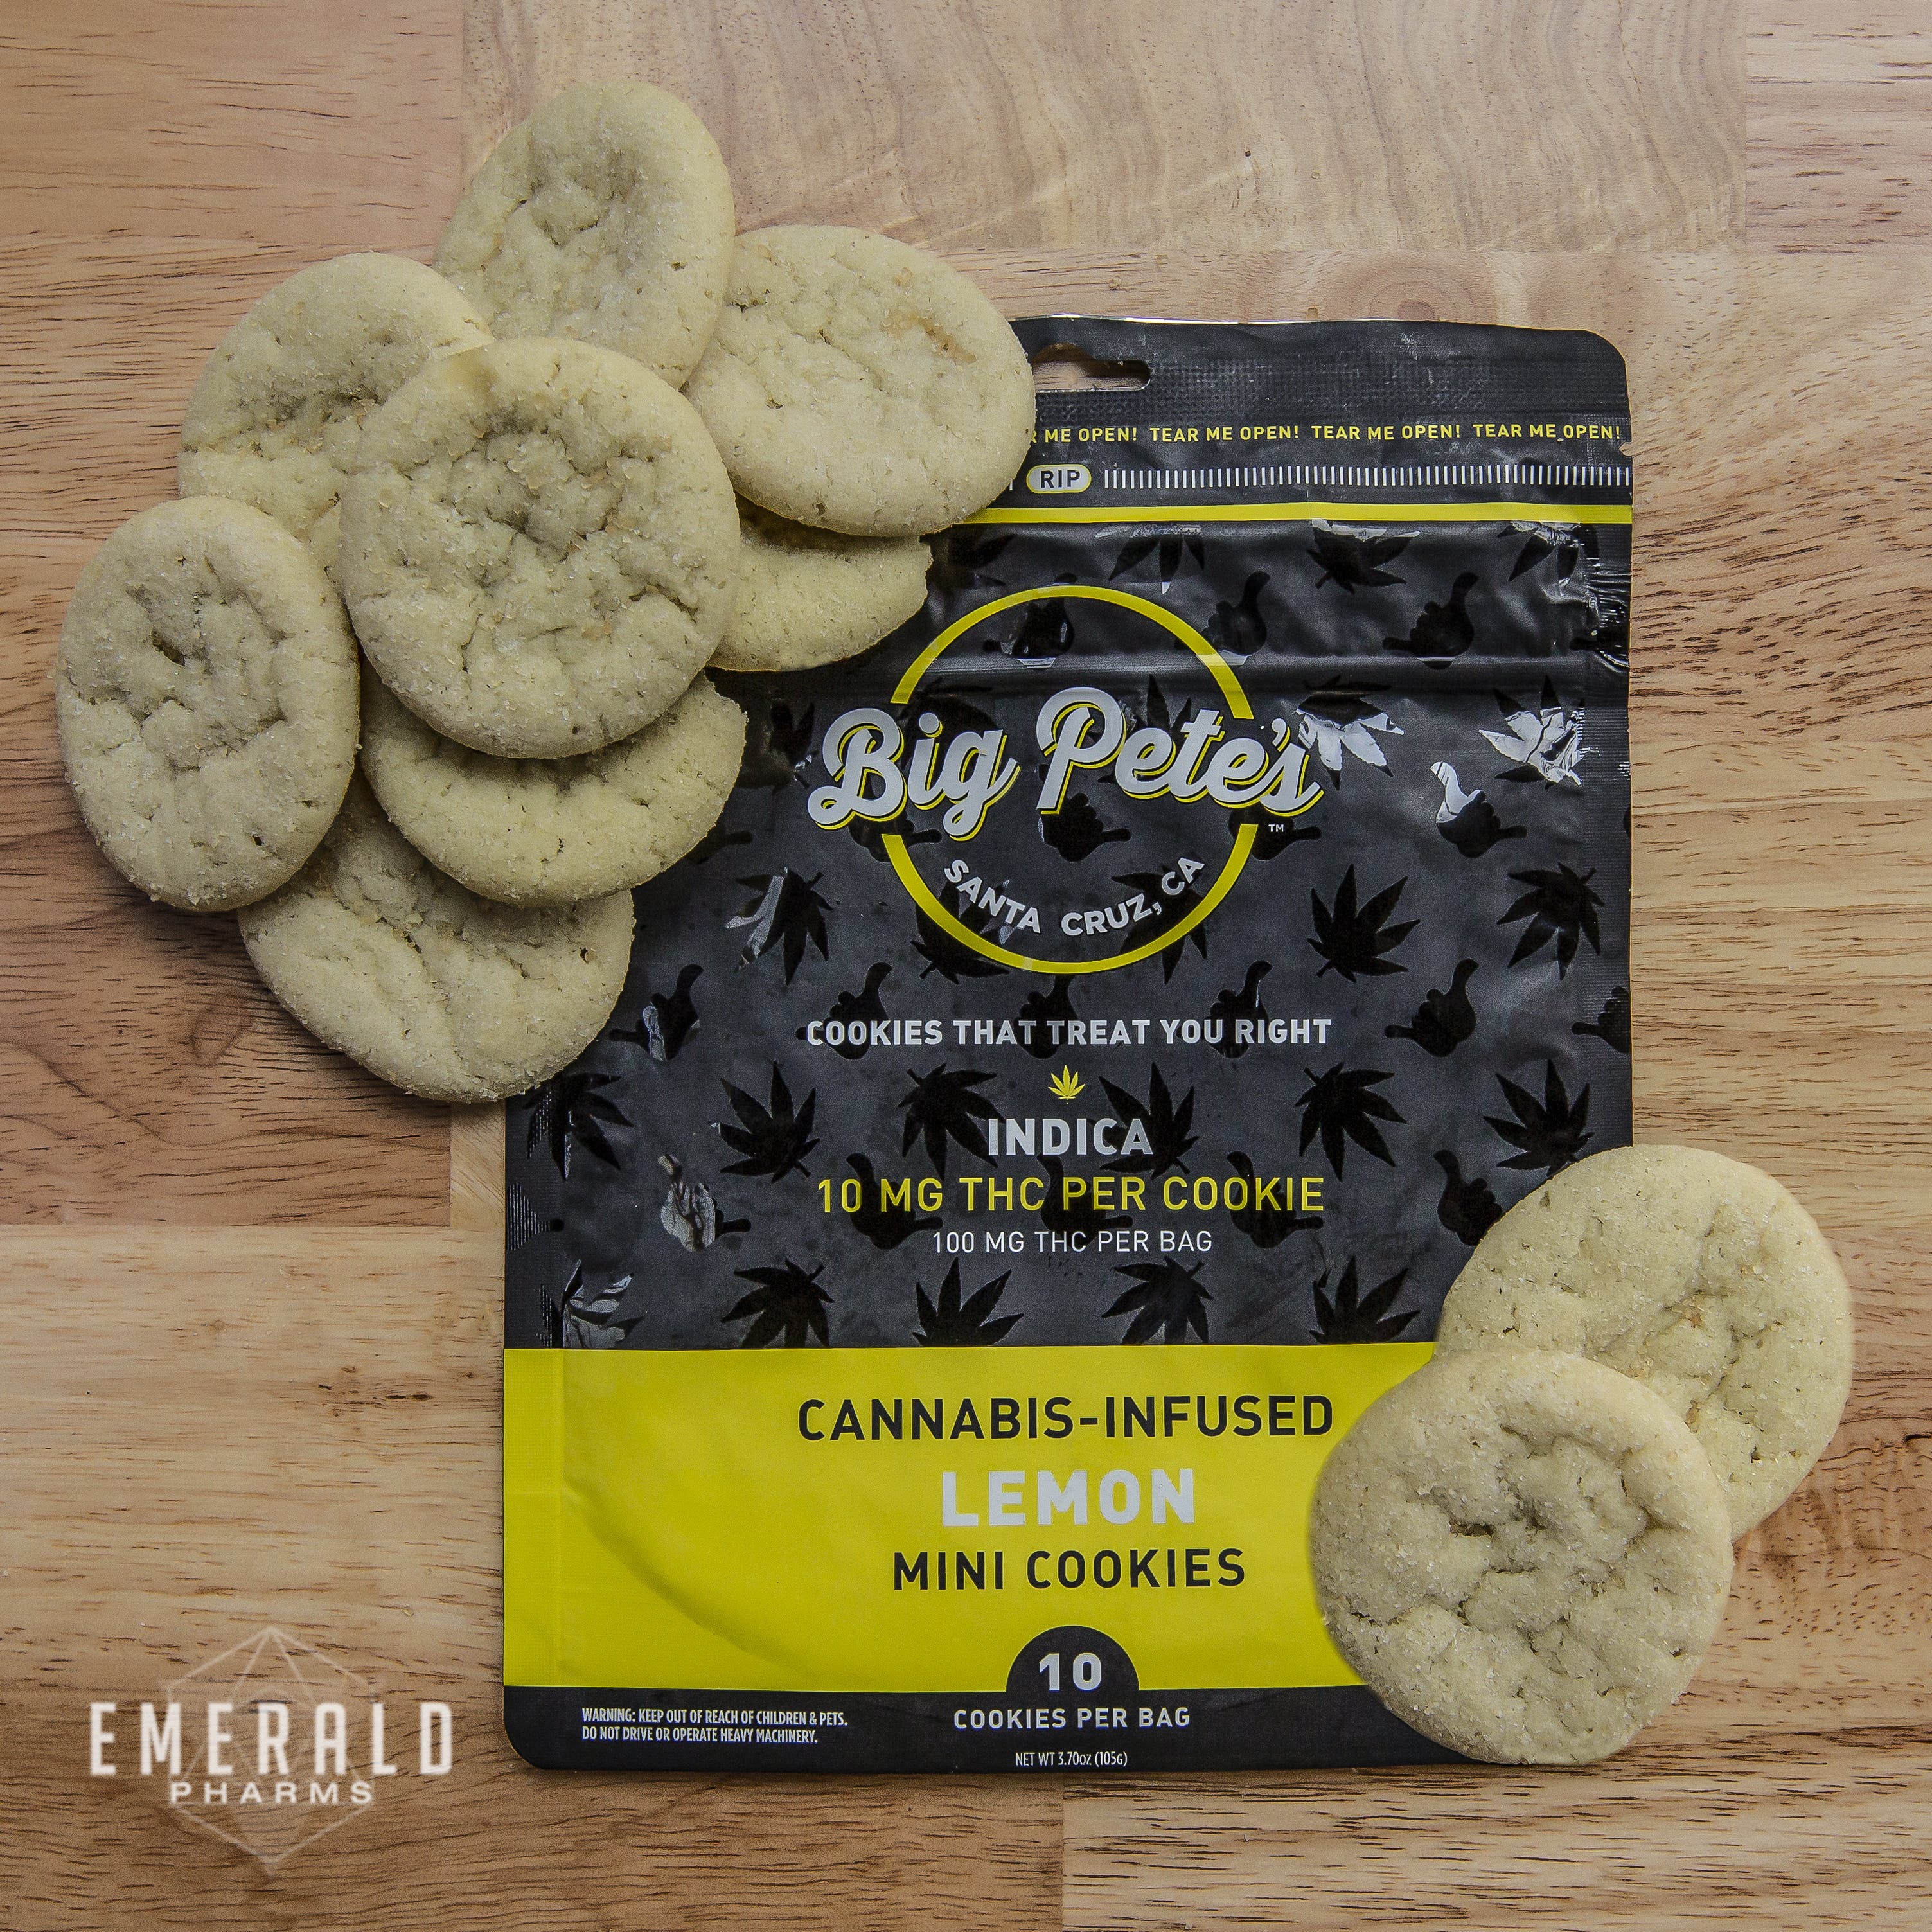 Lemon Indica Cookies by Big Pete's